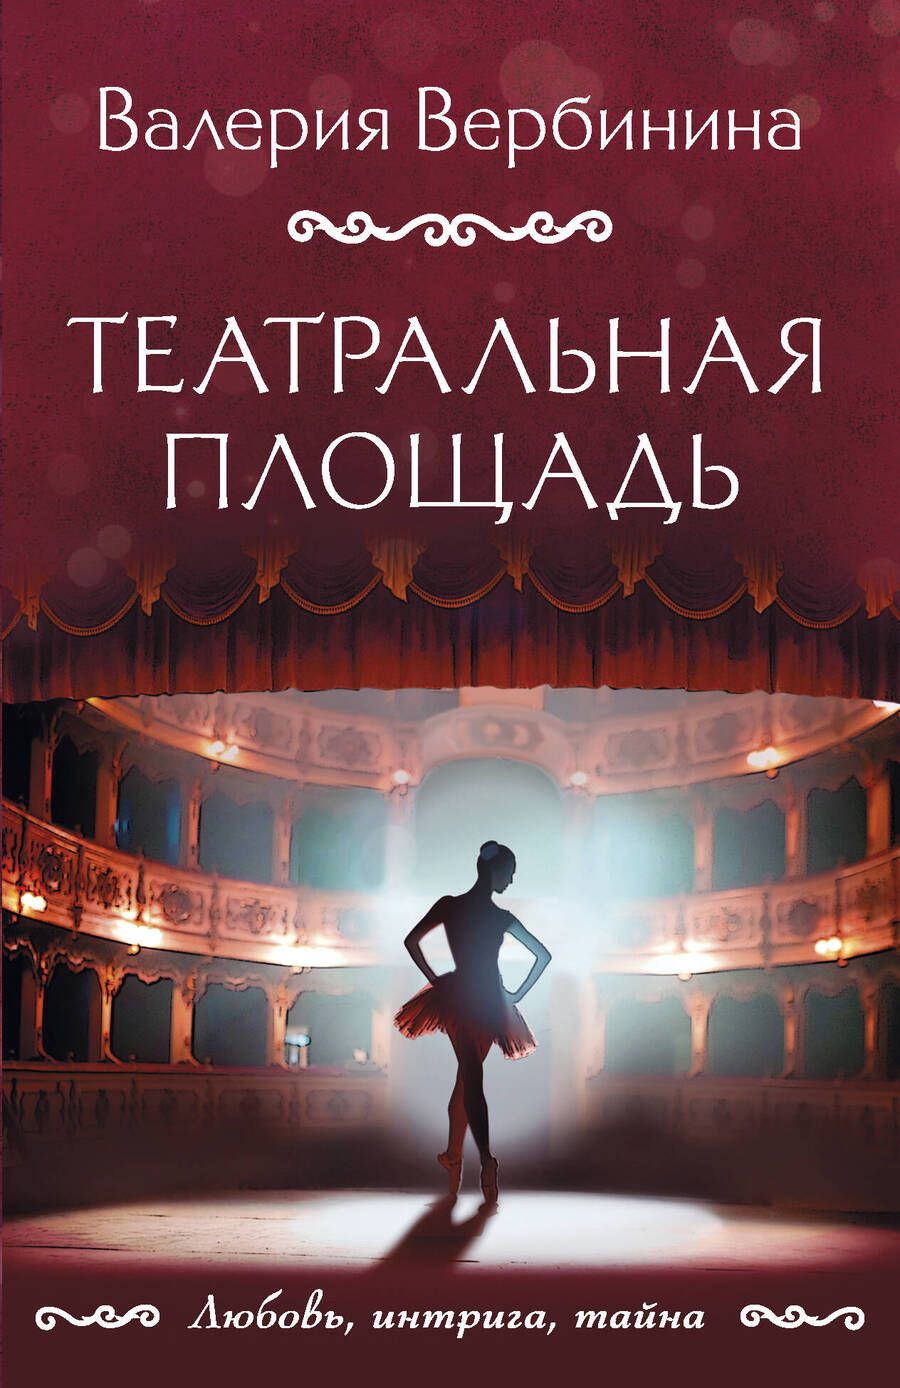 Обложка книги "Вербинина: Театральная площадь"